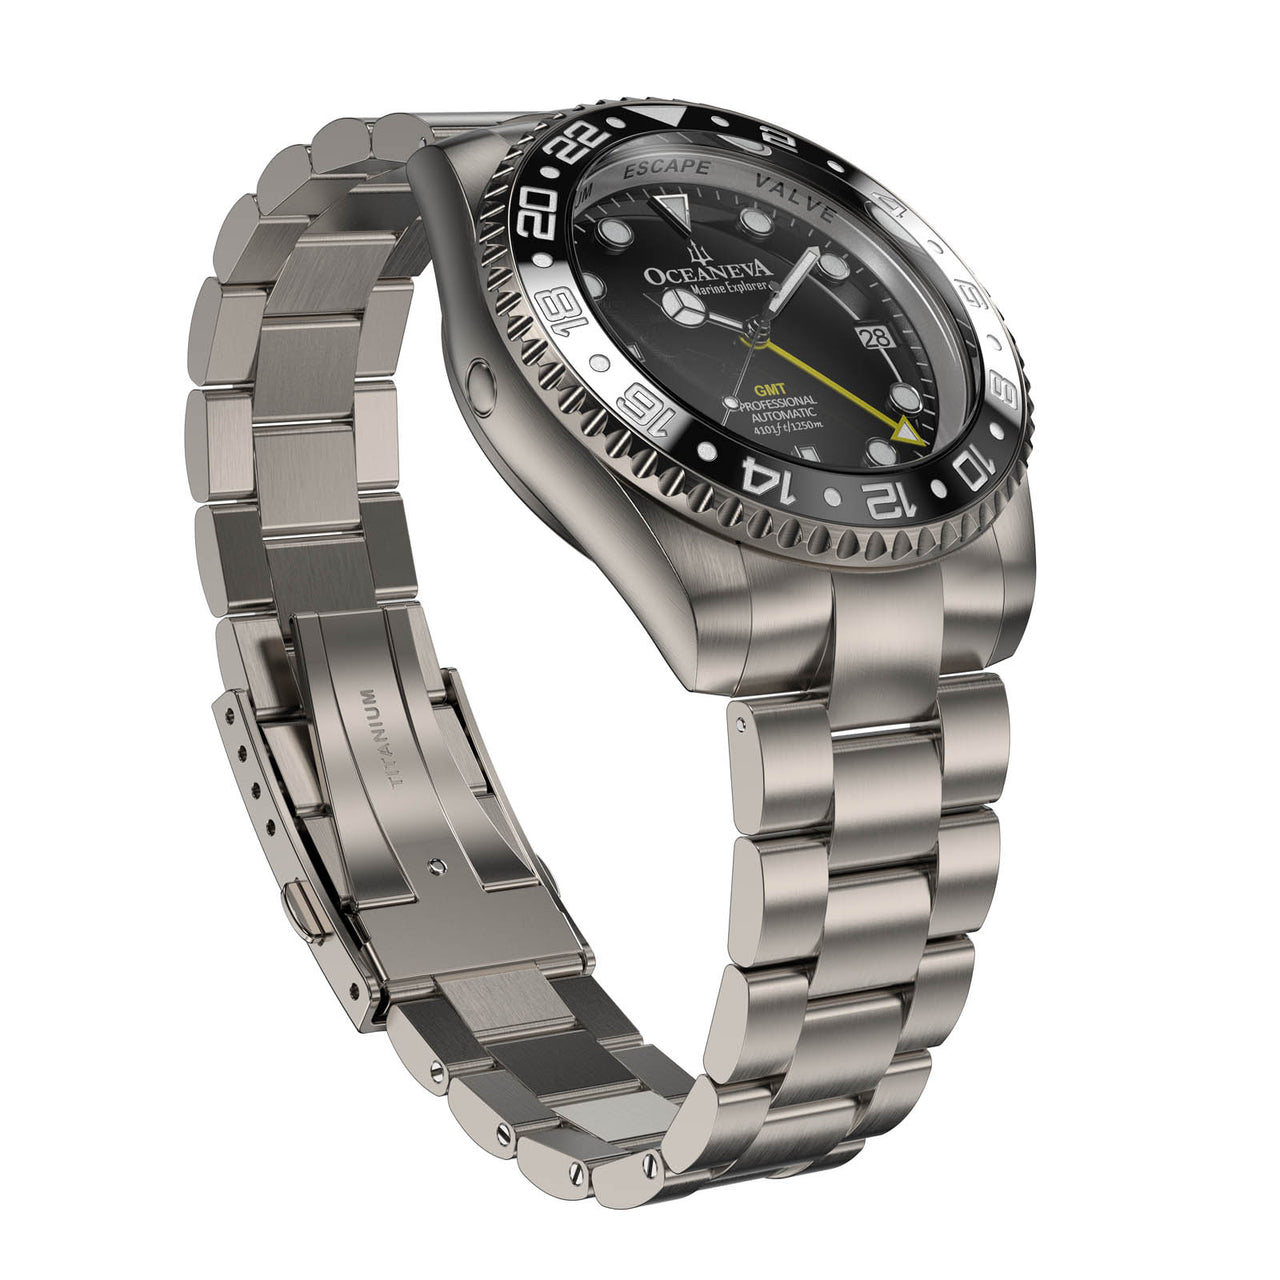 Oceaneva Titanium Automatic Watch with hypoallergenic titanium alloy construction